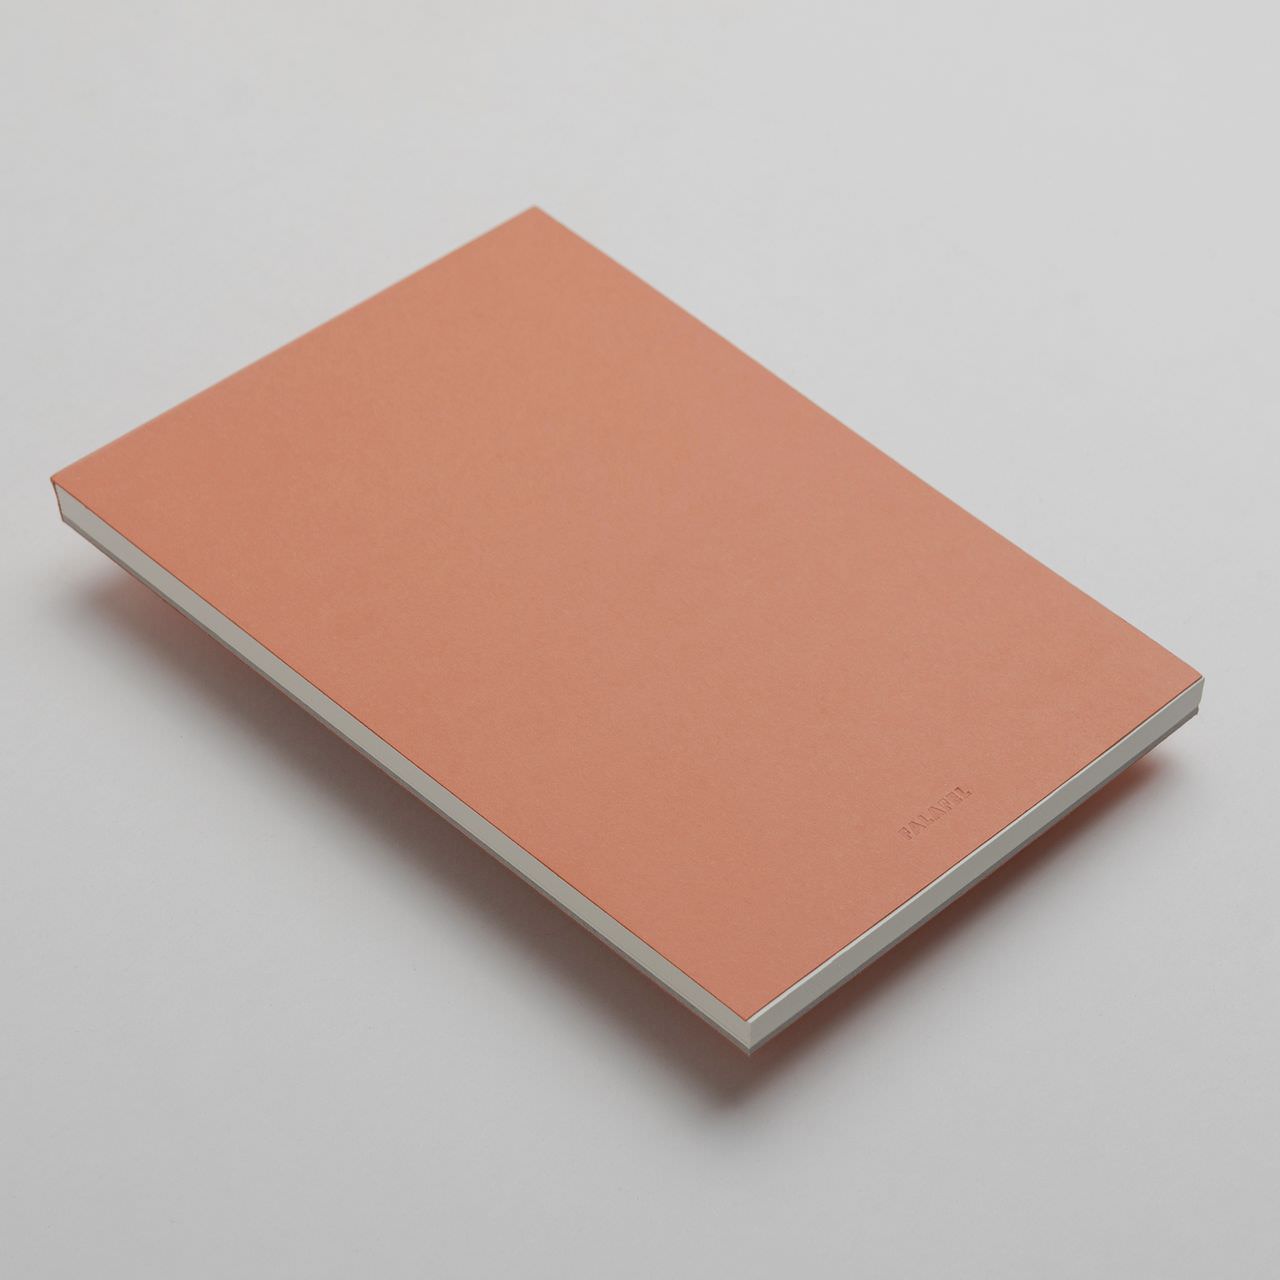 Блокнот для графики FALAFEL Terracotta 80г/кв.м (А5) 148х210мм 60л. листы c перфорацией по 299.00 руб от Falafel books